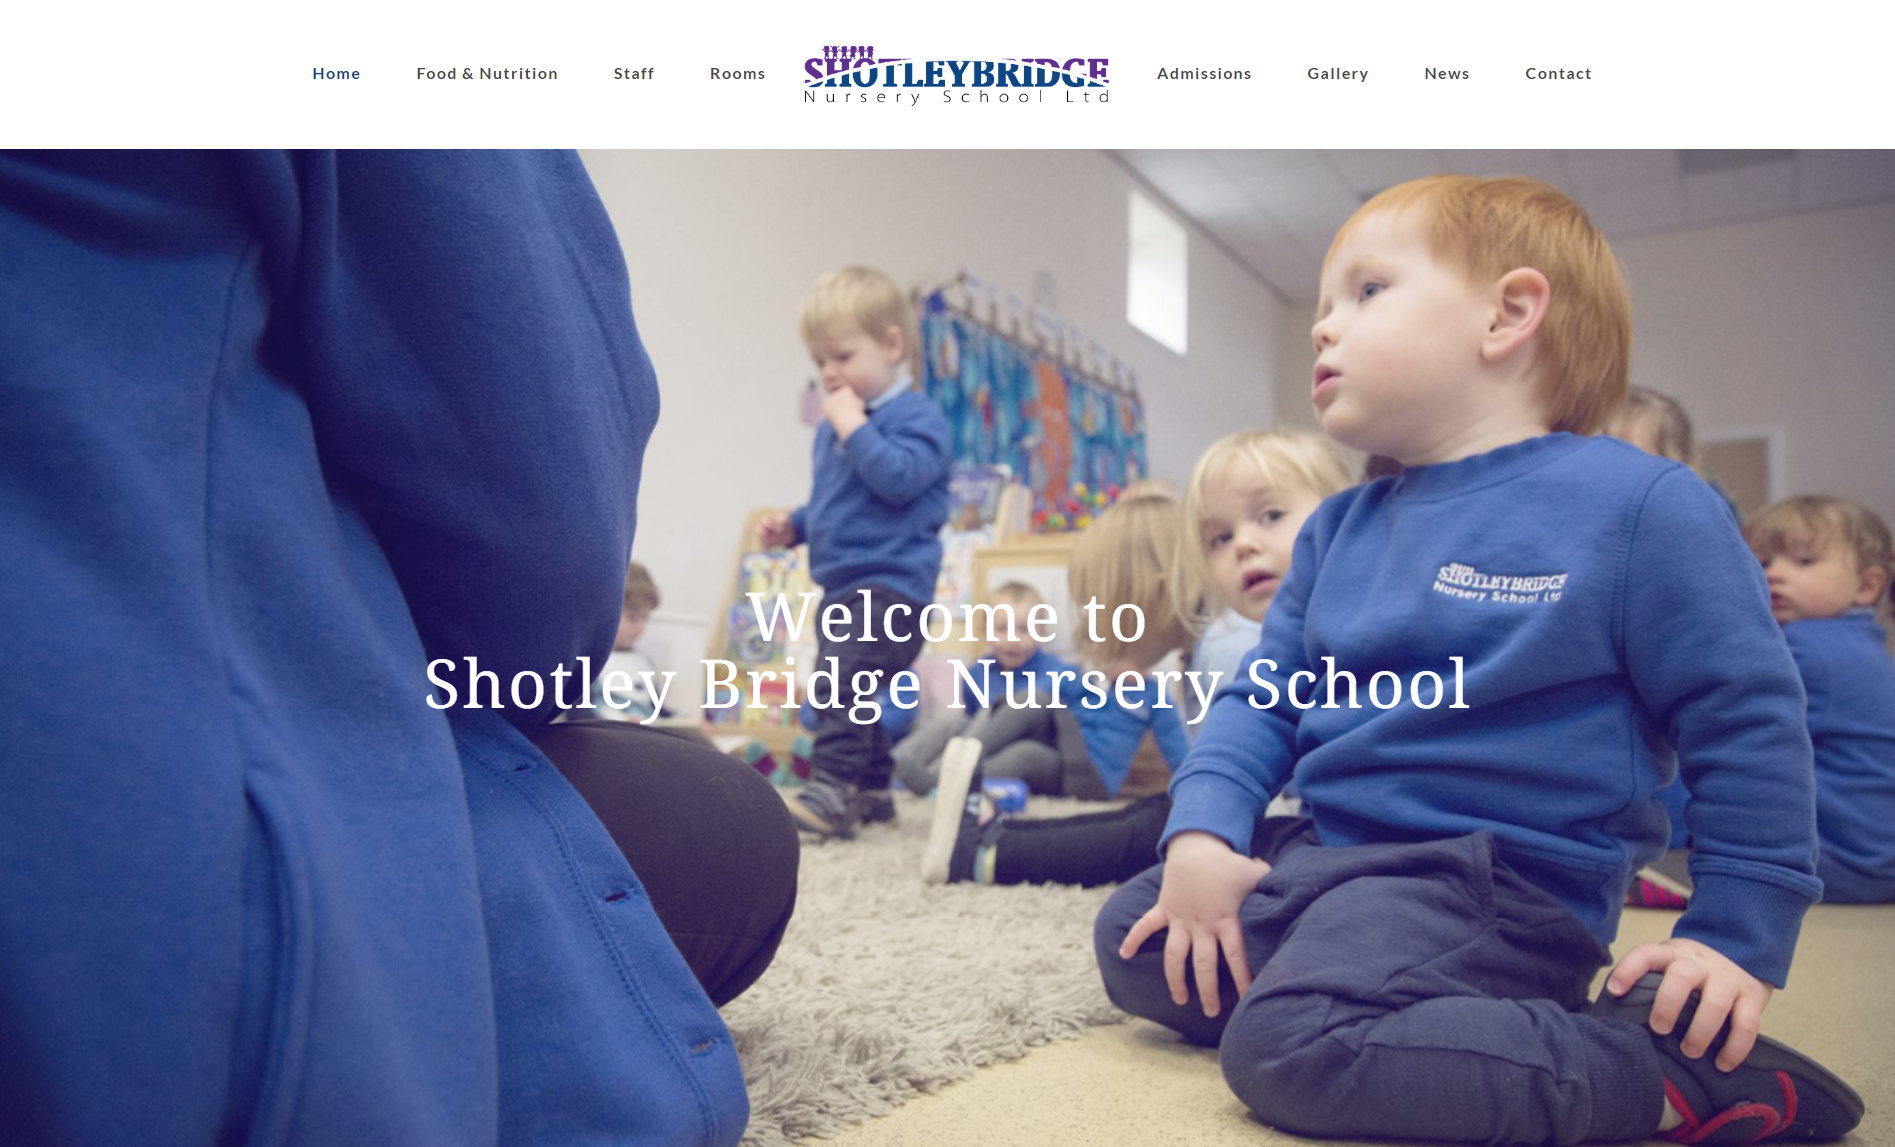 Websites for Schools, Nurseries, Secondary Schools, and School Trusts UK